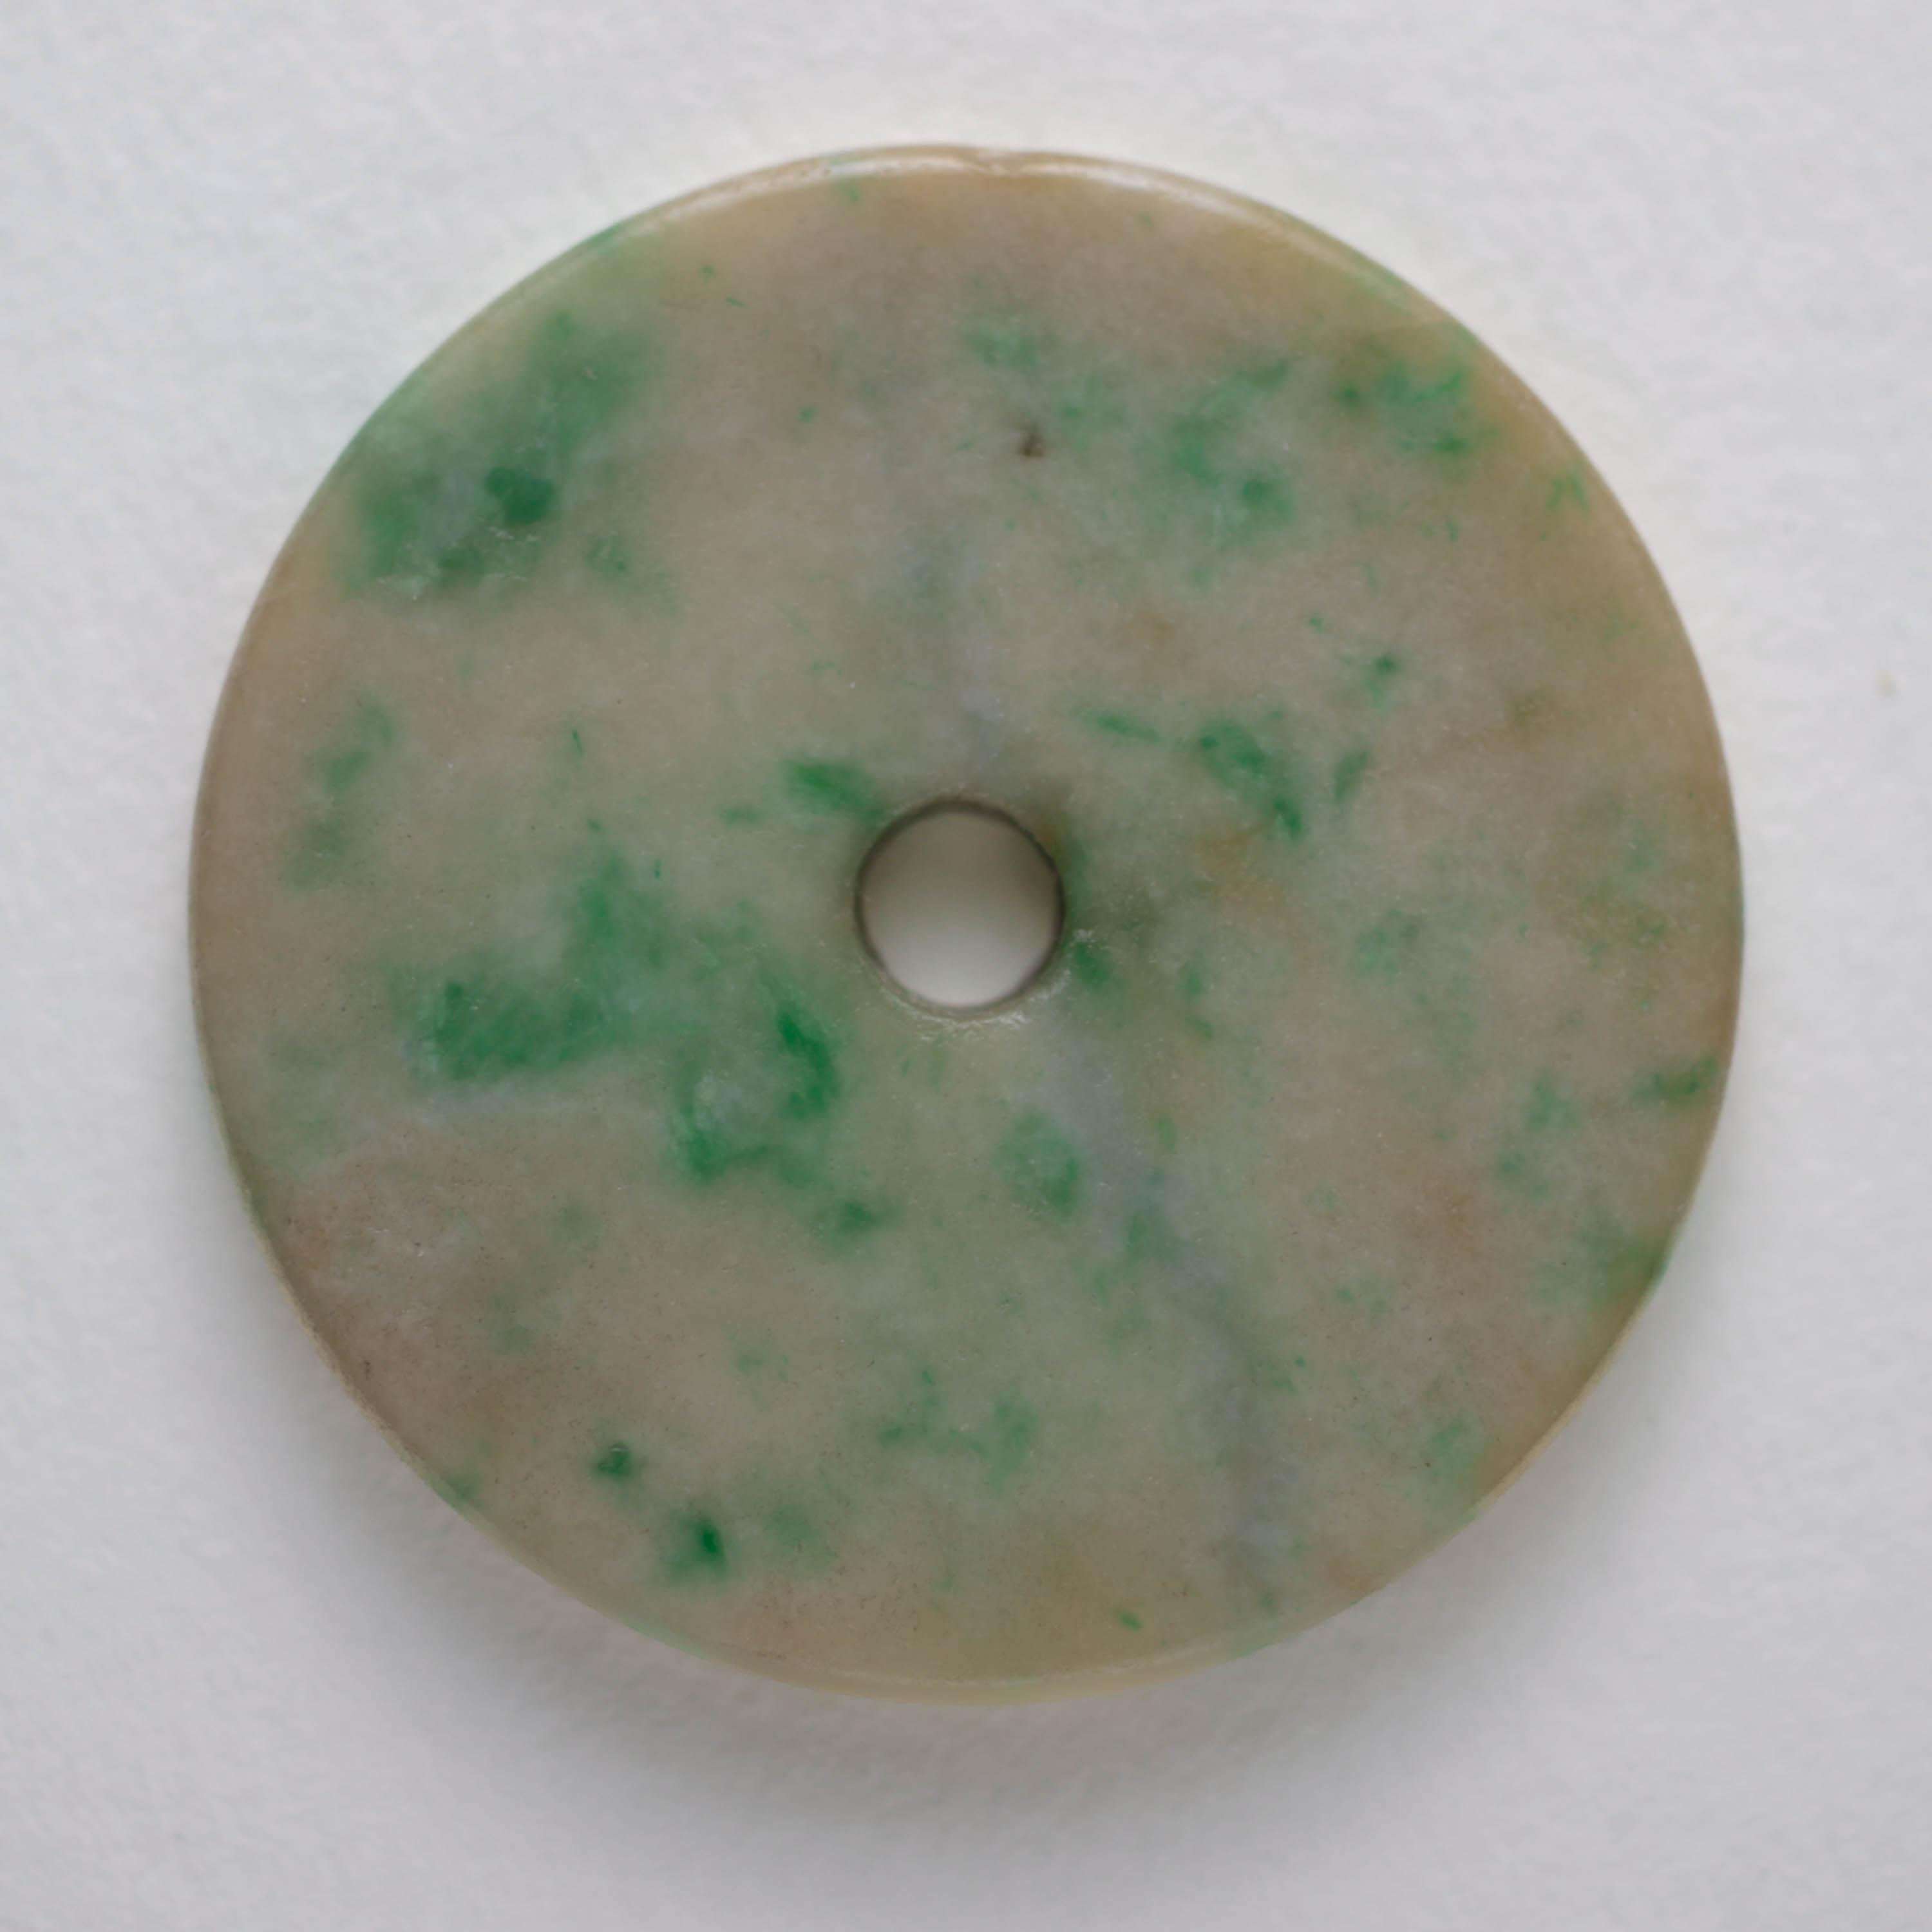 Cet exquis disque pi de la dynastie Qing a été sculpté à la main avant 1900. Le disque pi est simplement sculpté, sans décor, et magnifiquement proportionné. Les premiers disques néolithiques étaient simplement sculptés et dépourvus d'ornementation